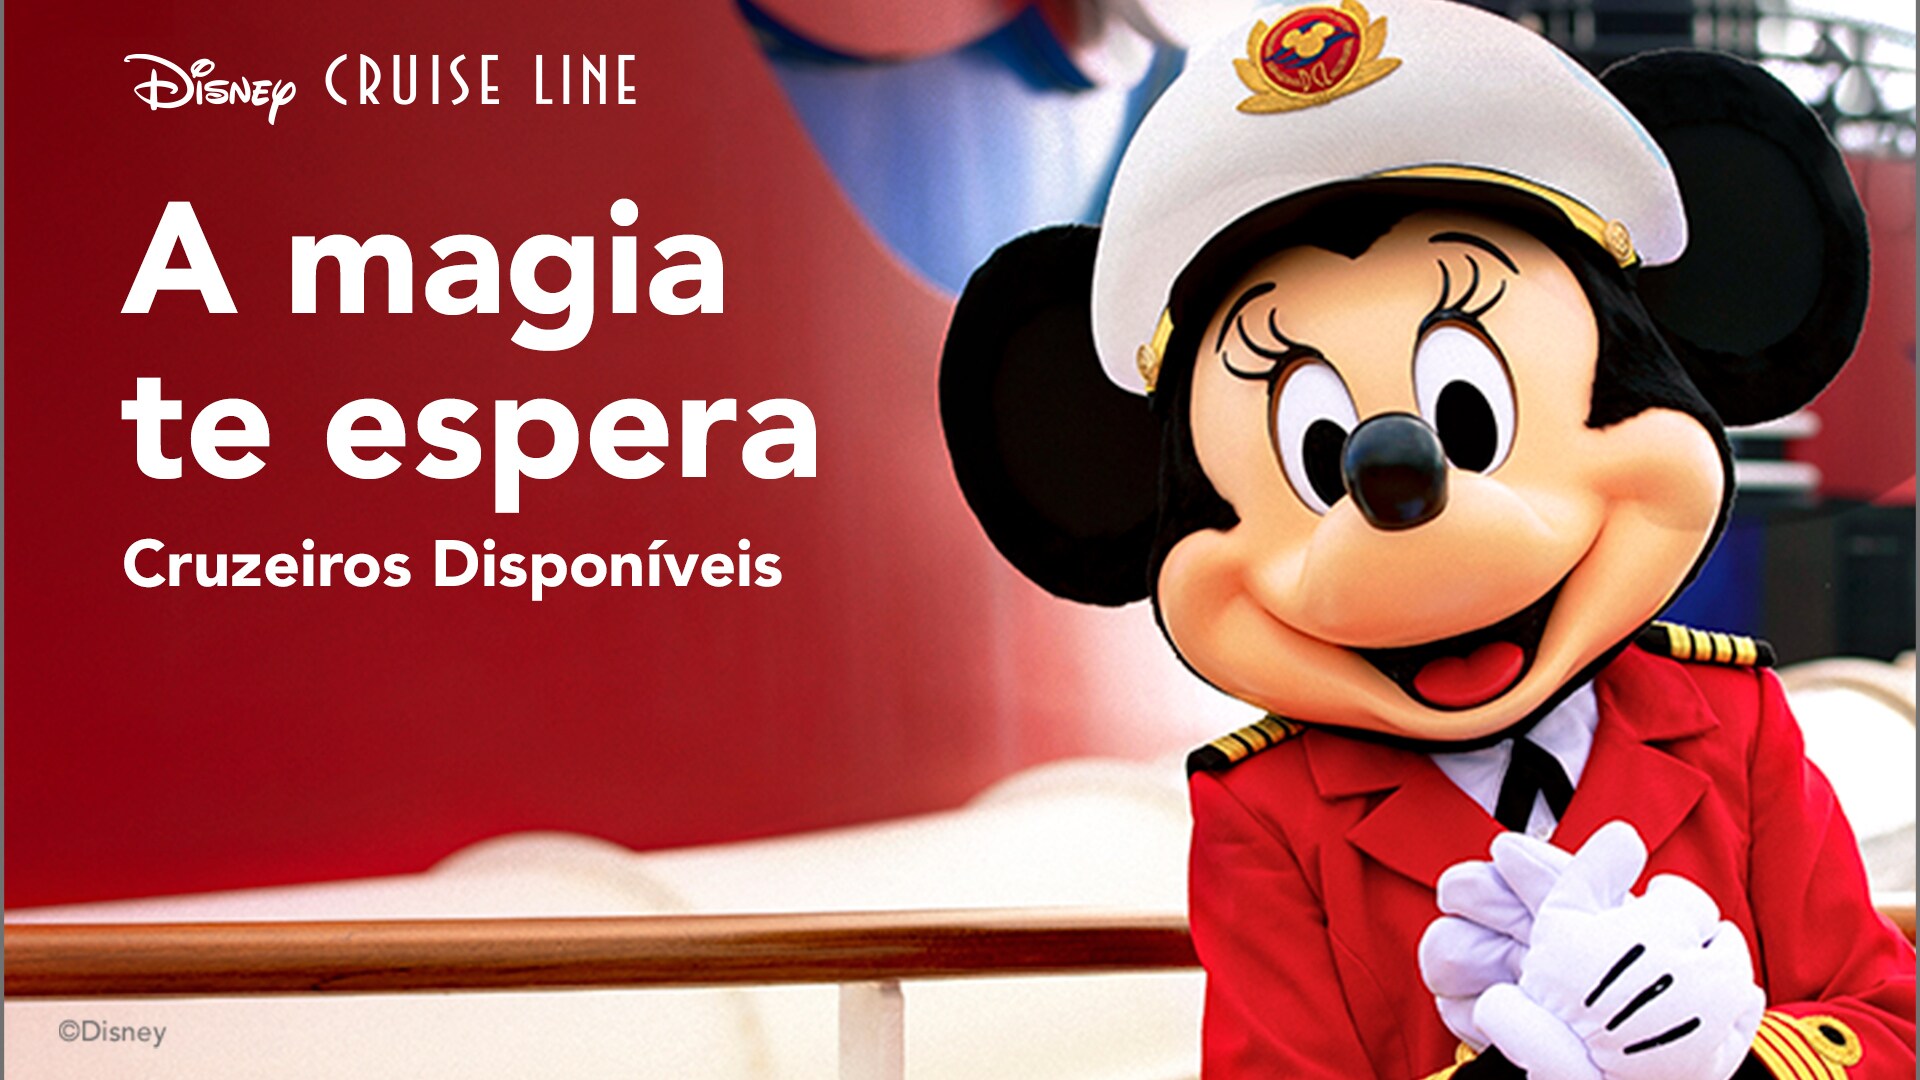 A magia espera por você com a Disney Cruise Line